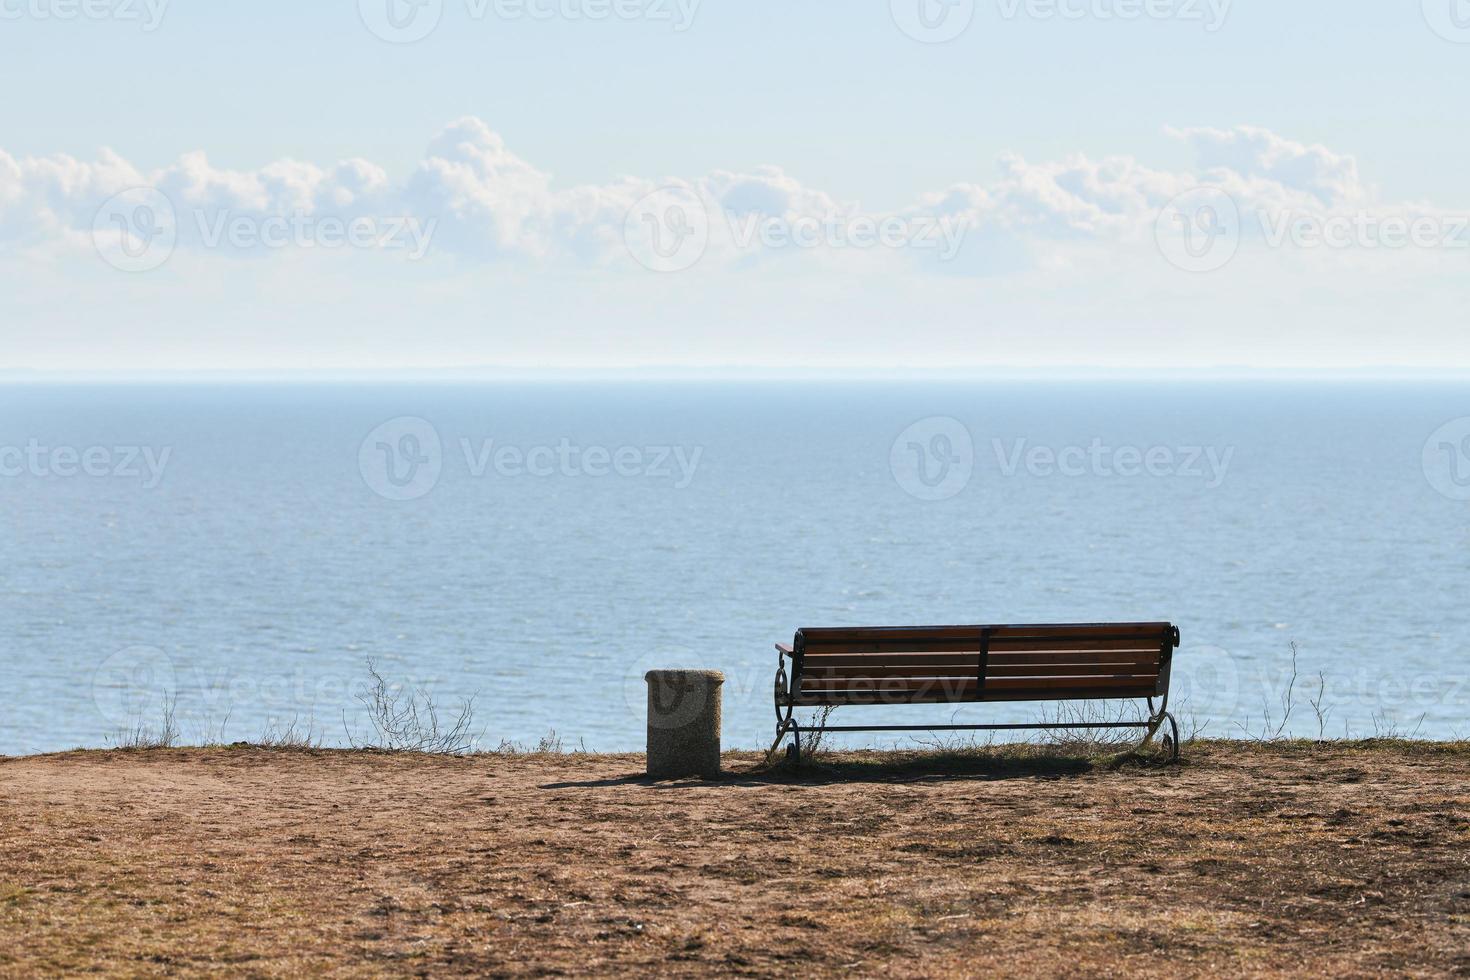 tömma bänk med soptunna på klippa innan hav bakgrund, fredlig tyst plats för tänkande ensam foto